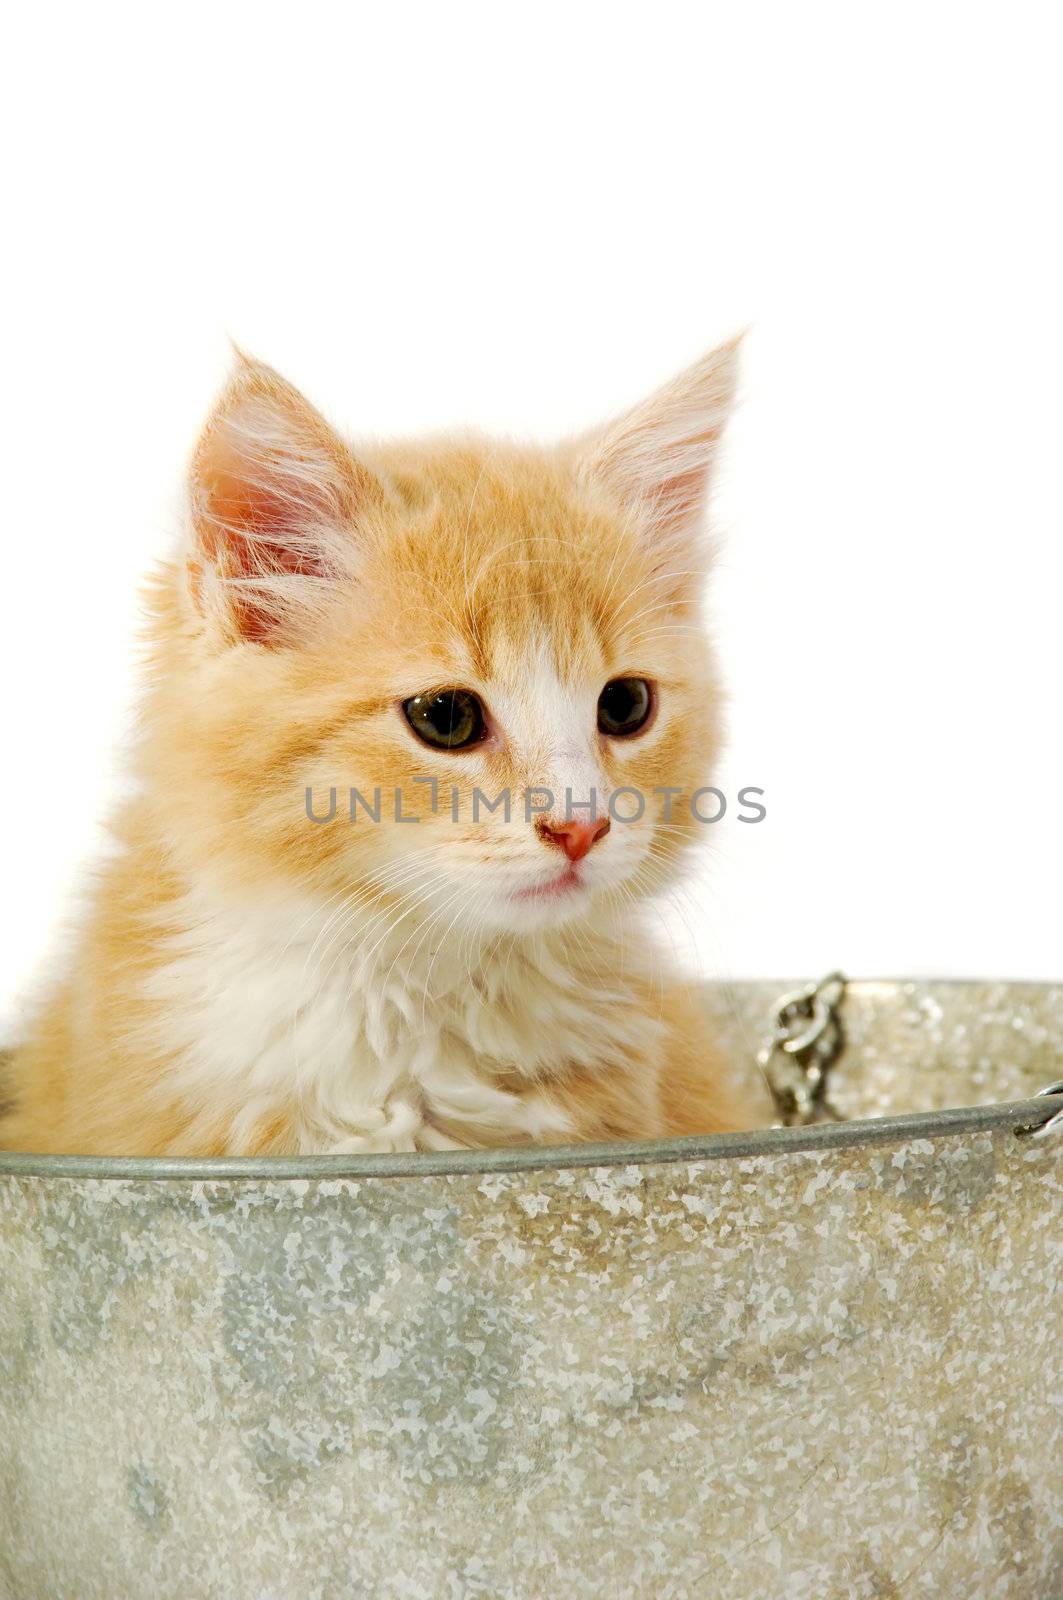 Sweet cat kitten in a bucket taken on a clran white background